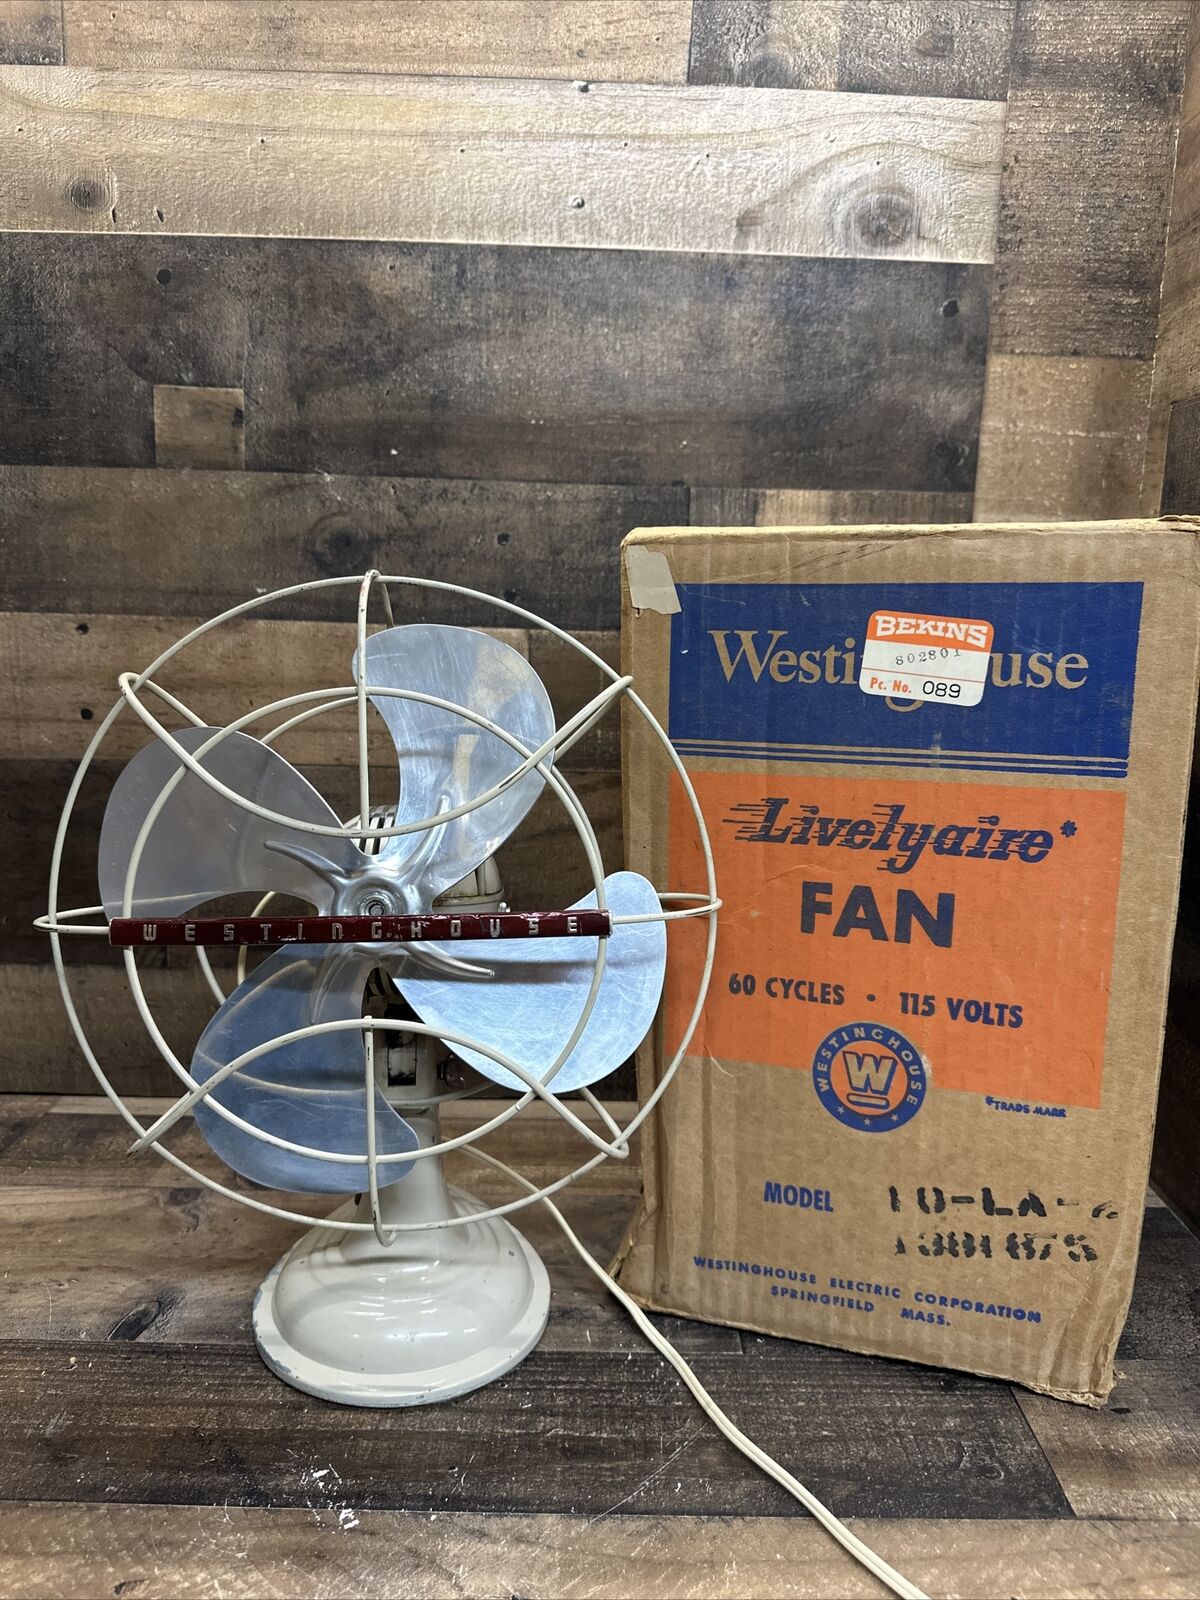 Vintage Westinghouse Art Deco 4 Blade 10 LA 2 Oscillating Fan Tested Works